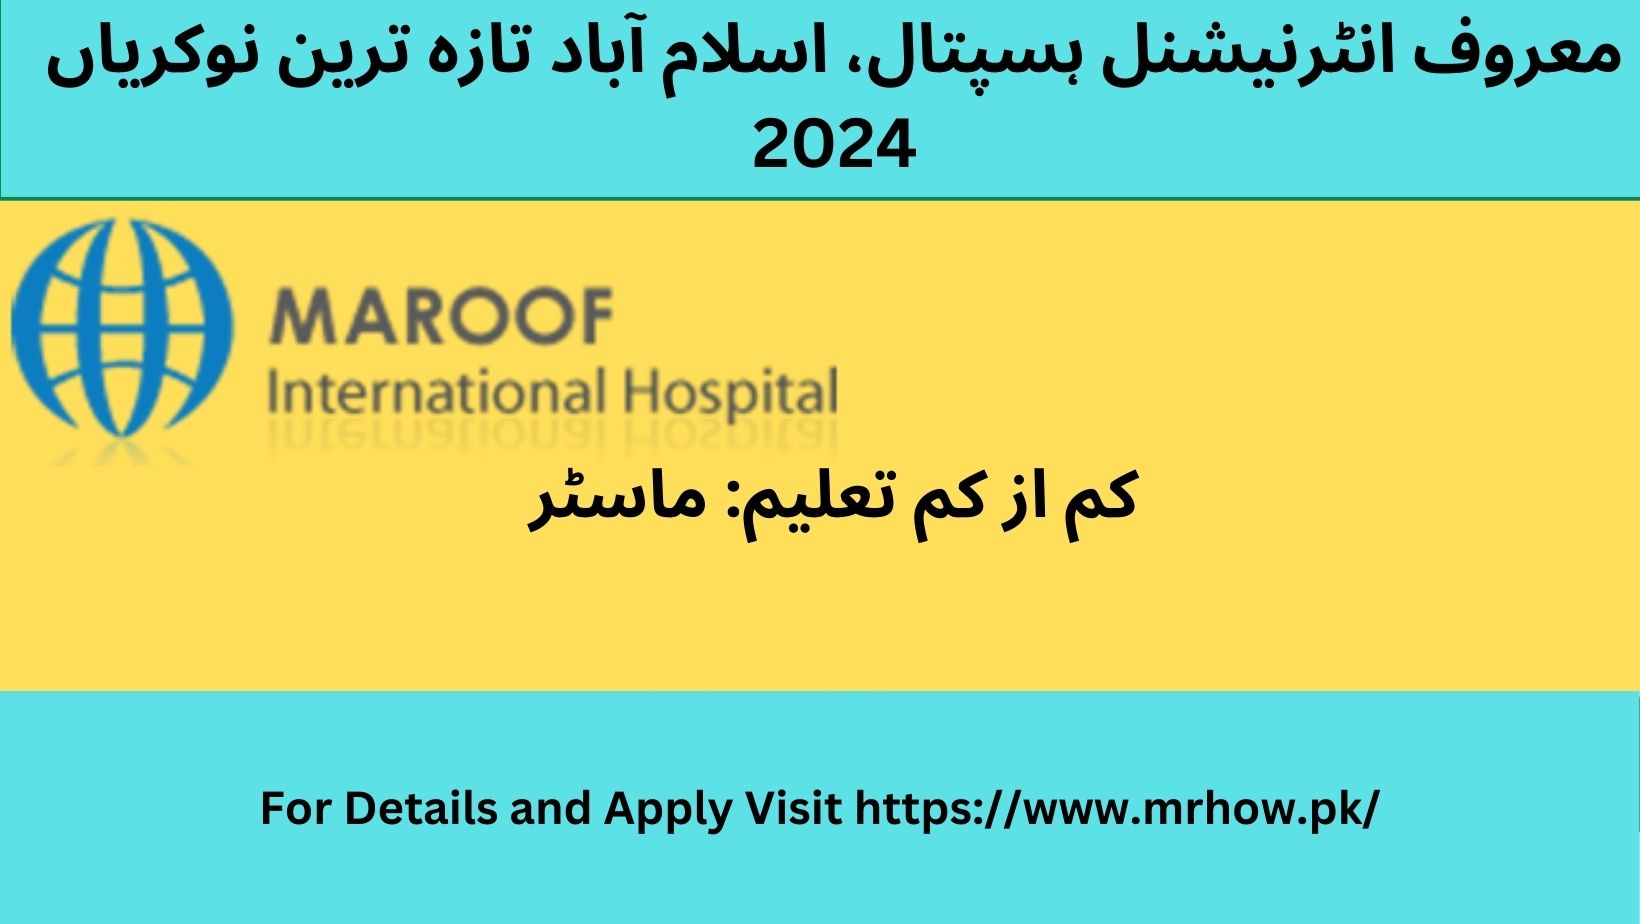 MAROOF International Hospital